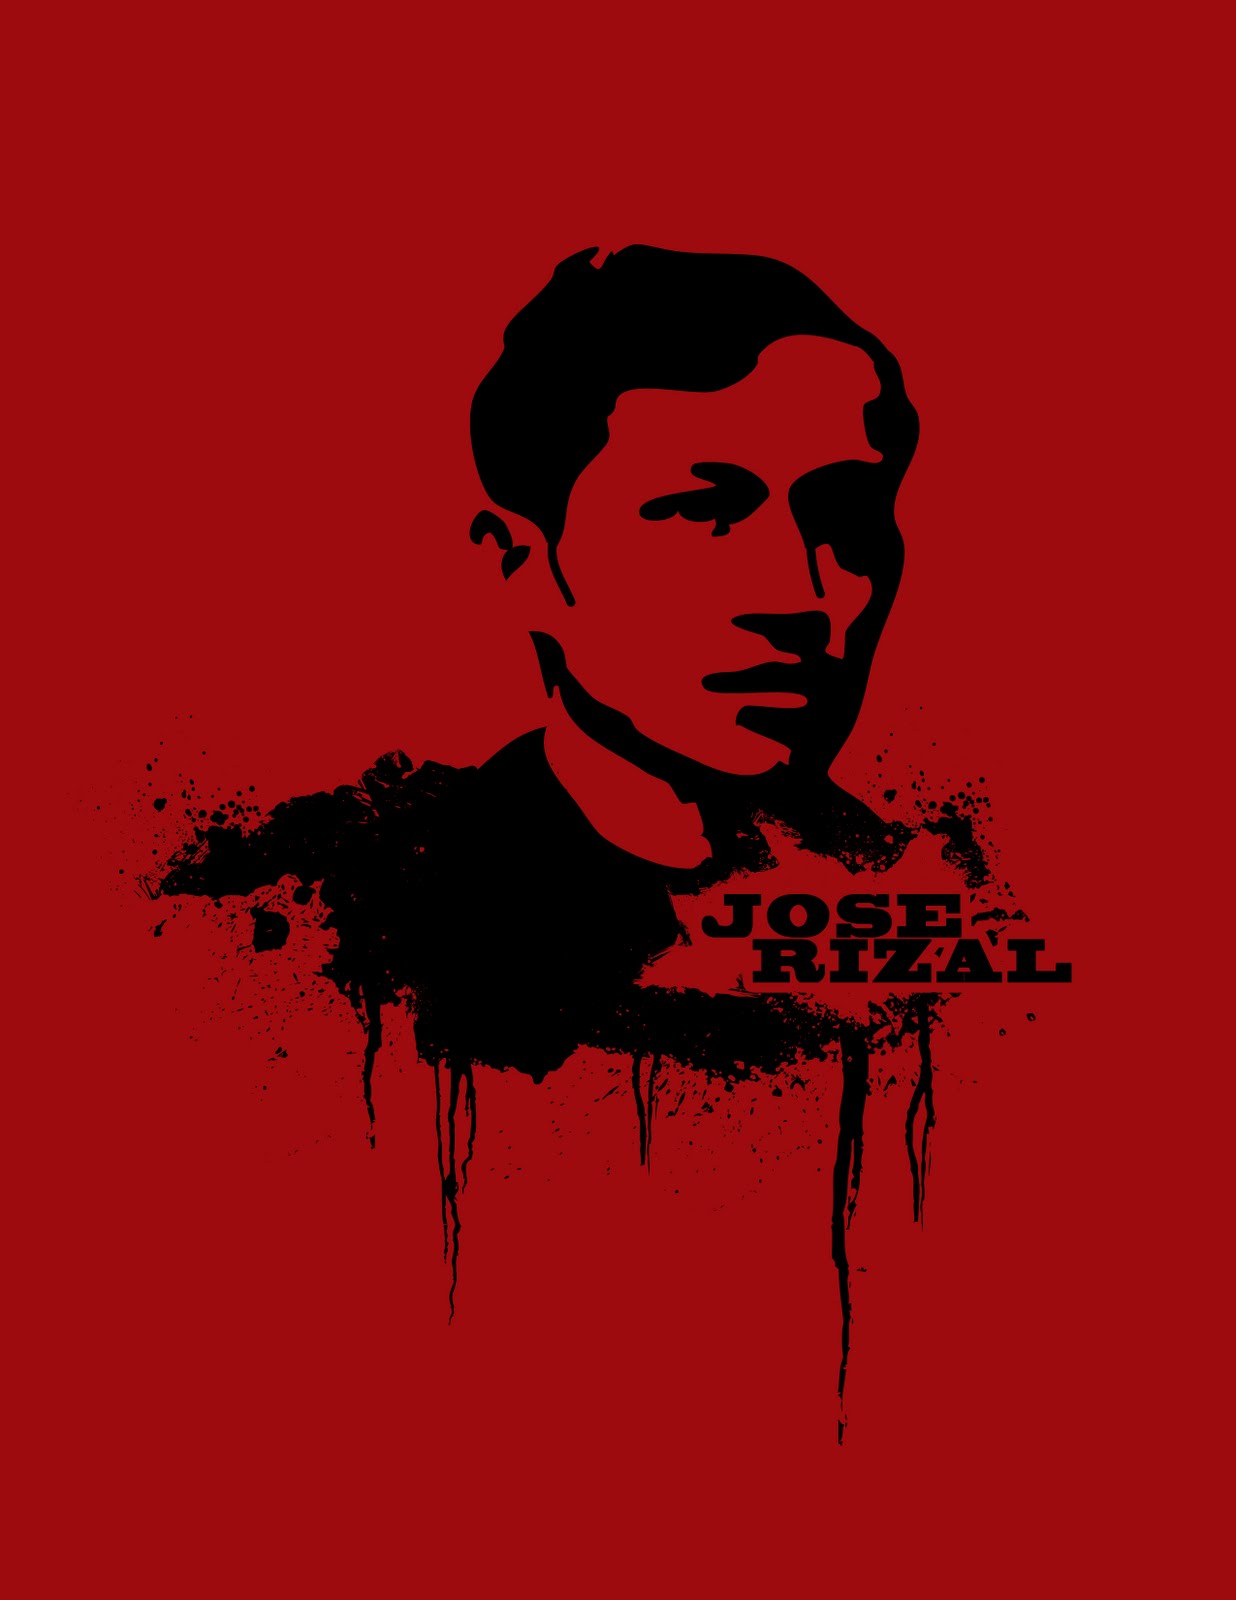 wala lang: Pangungumpisal at si Rizal